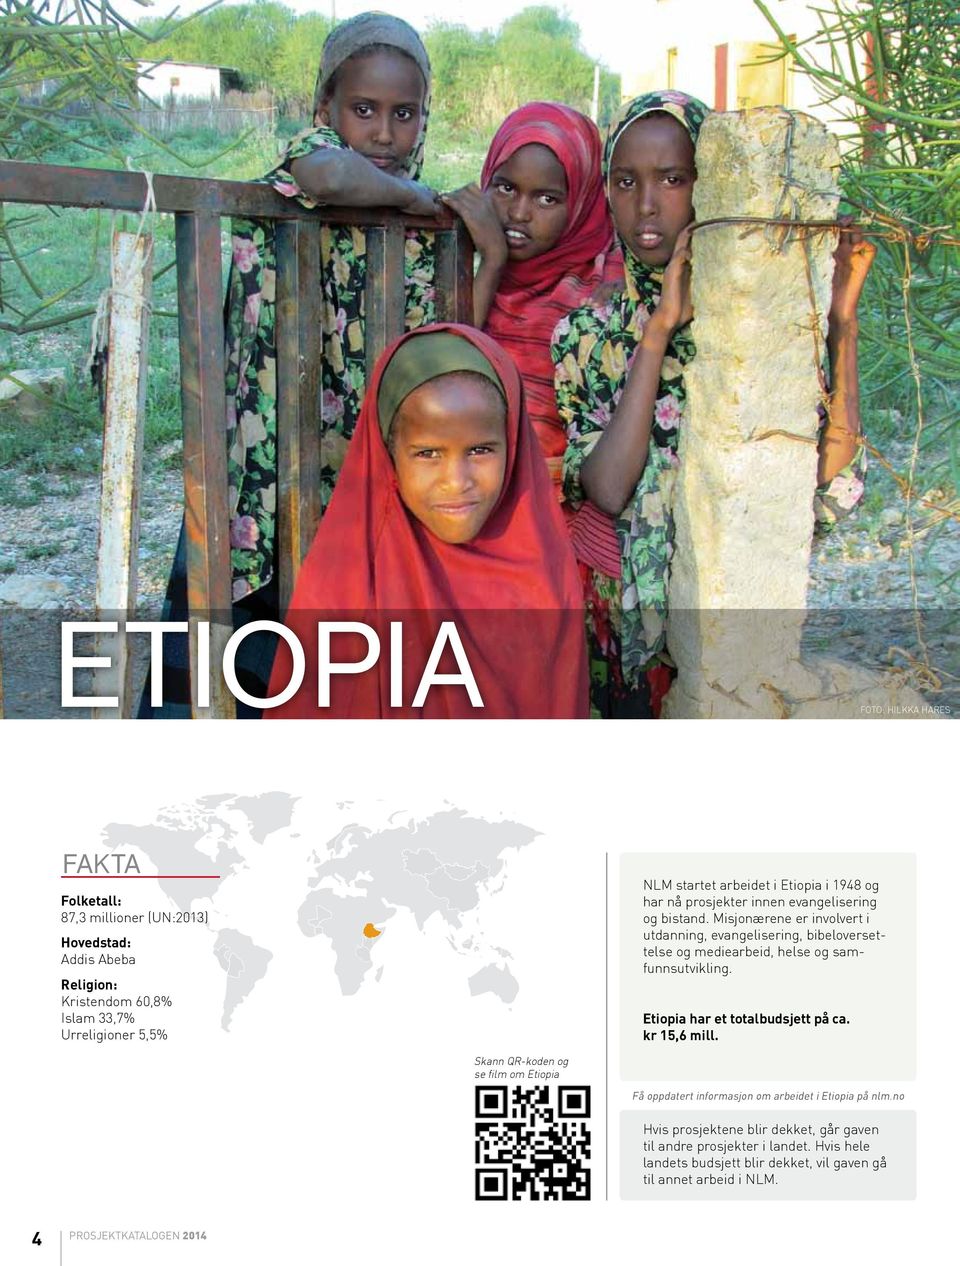 Misjonærene er involvert i utdanning, evangelisering, bibeloversettelse og mediearbeid, helse og samfunnsutvikling. Etiopia har et totalbudsjett på ca.